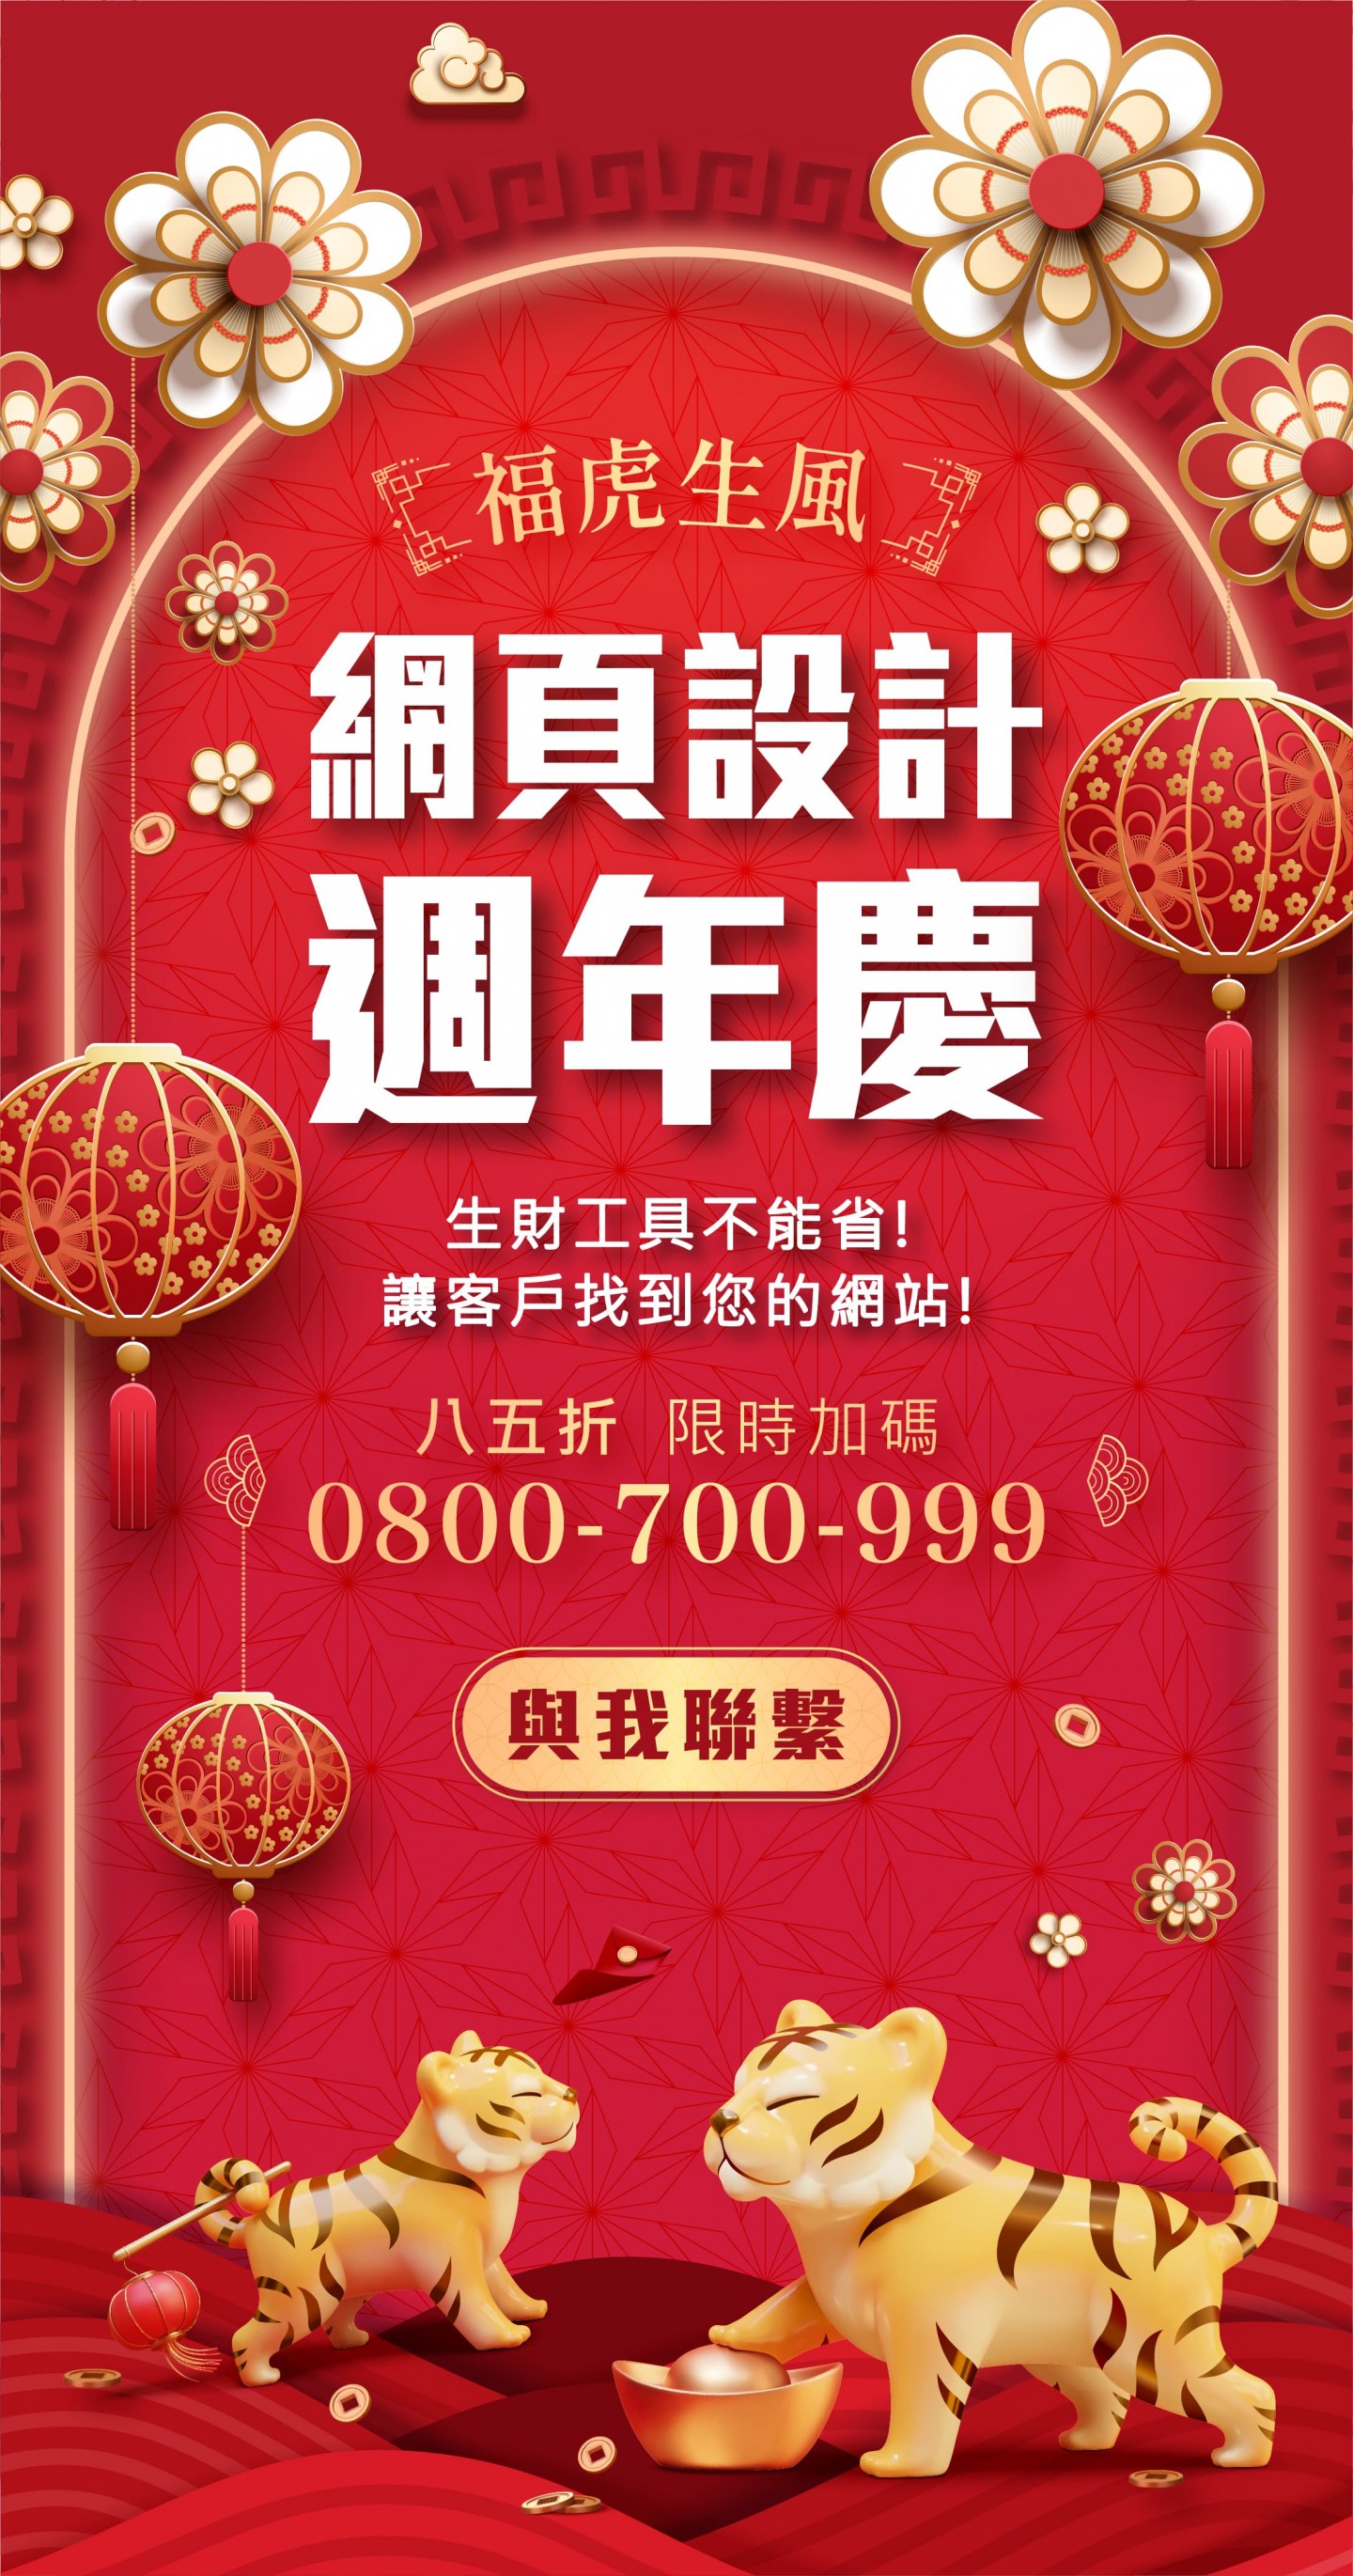 台中網頁設計周年慶